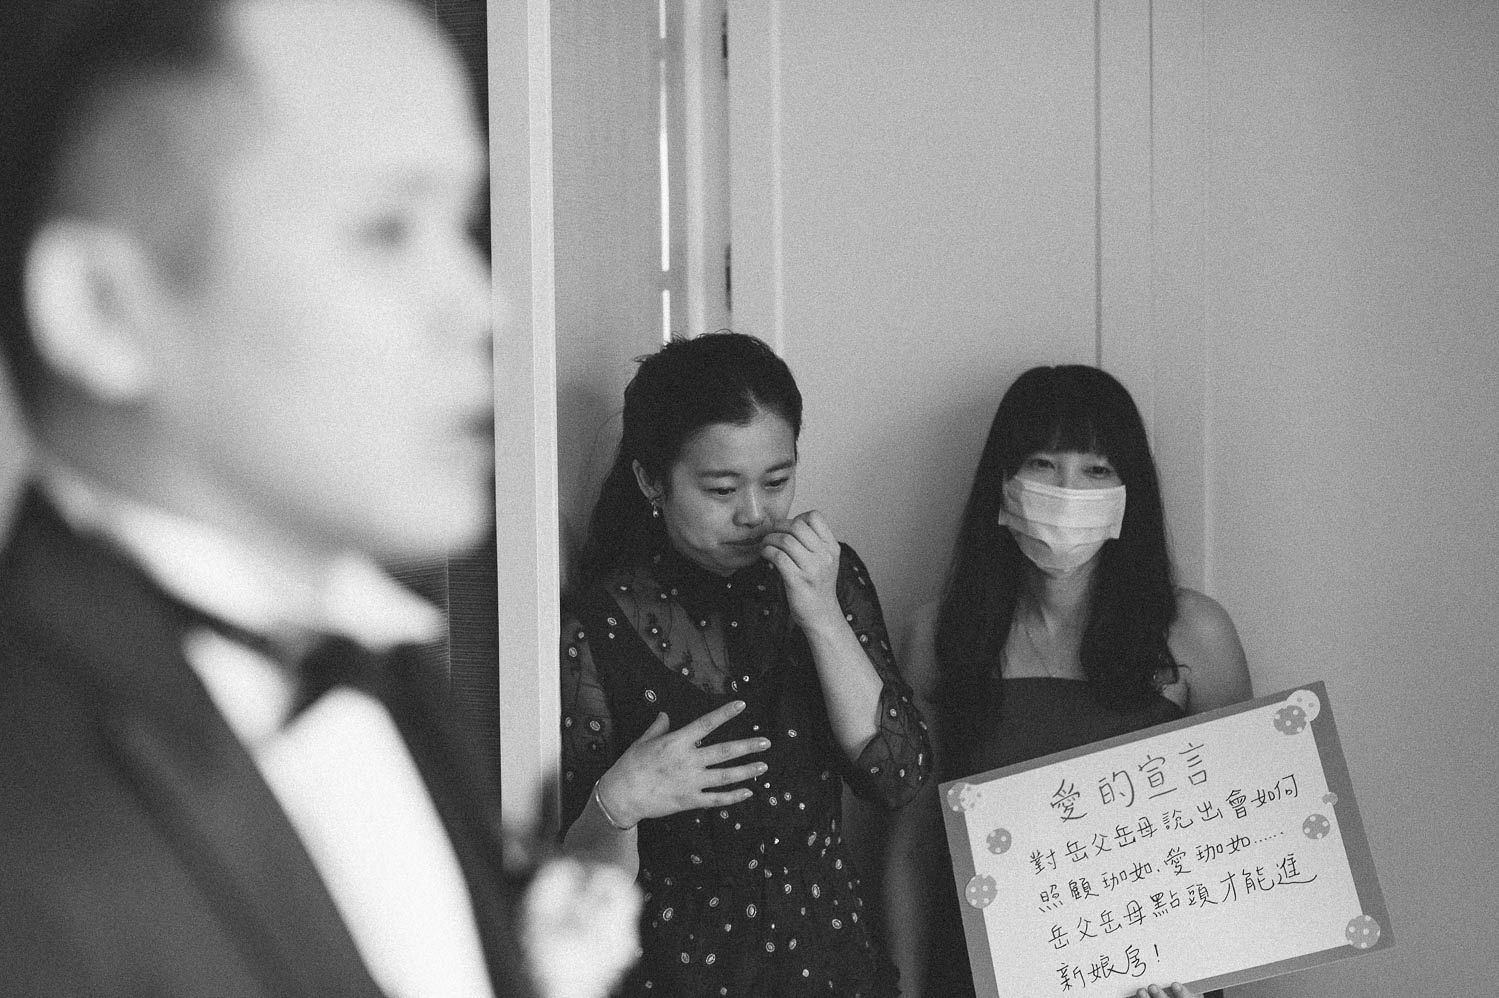 台中 林酒店 婚禮